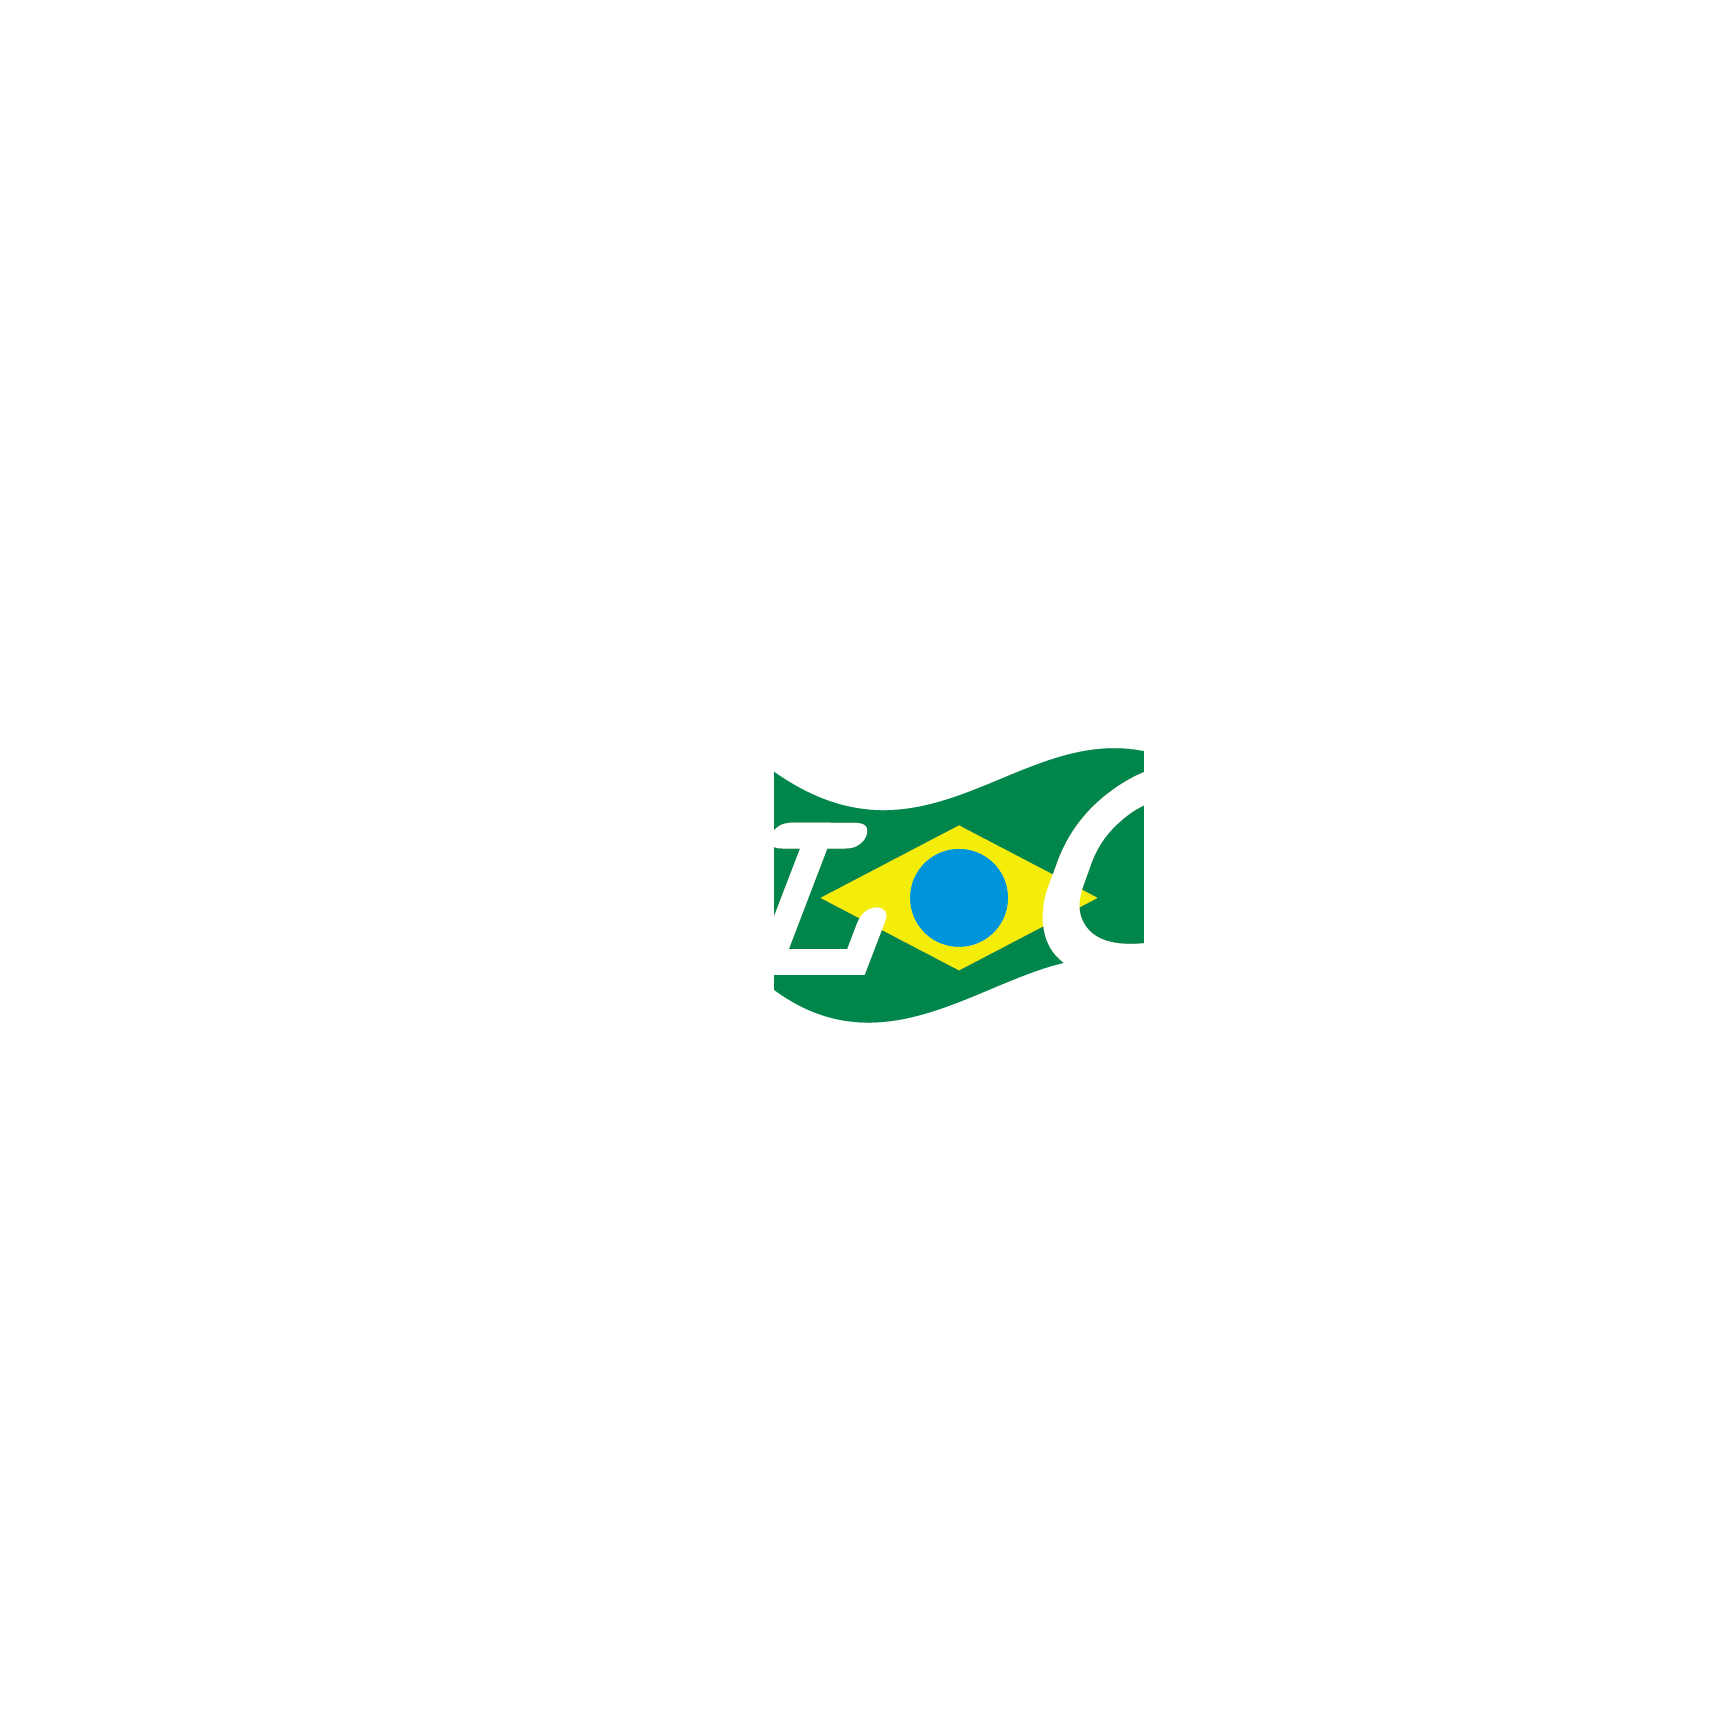 Atualcard